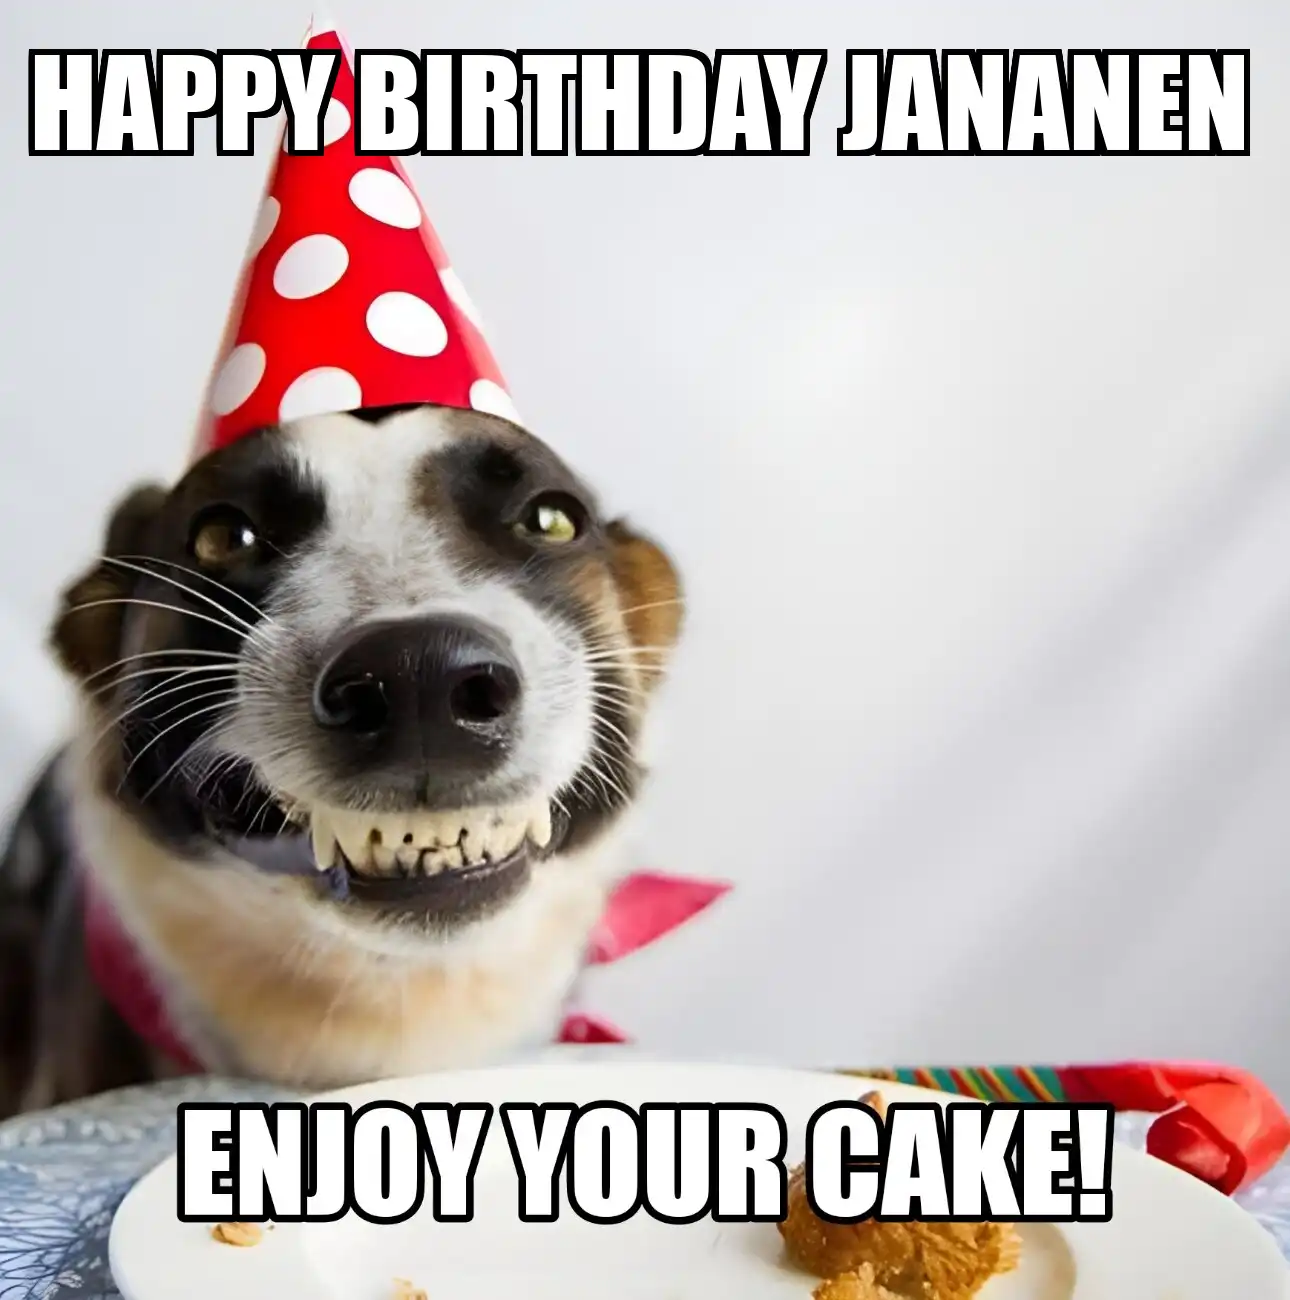 Happy Birthday Jananen Enjoy Your Cake Dog Meme